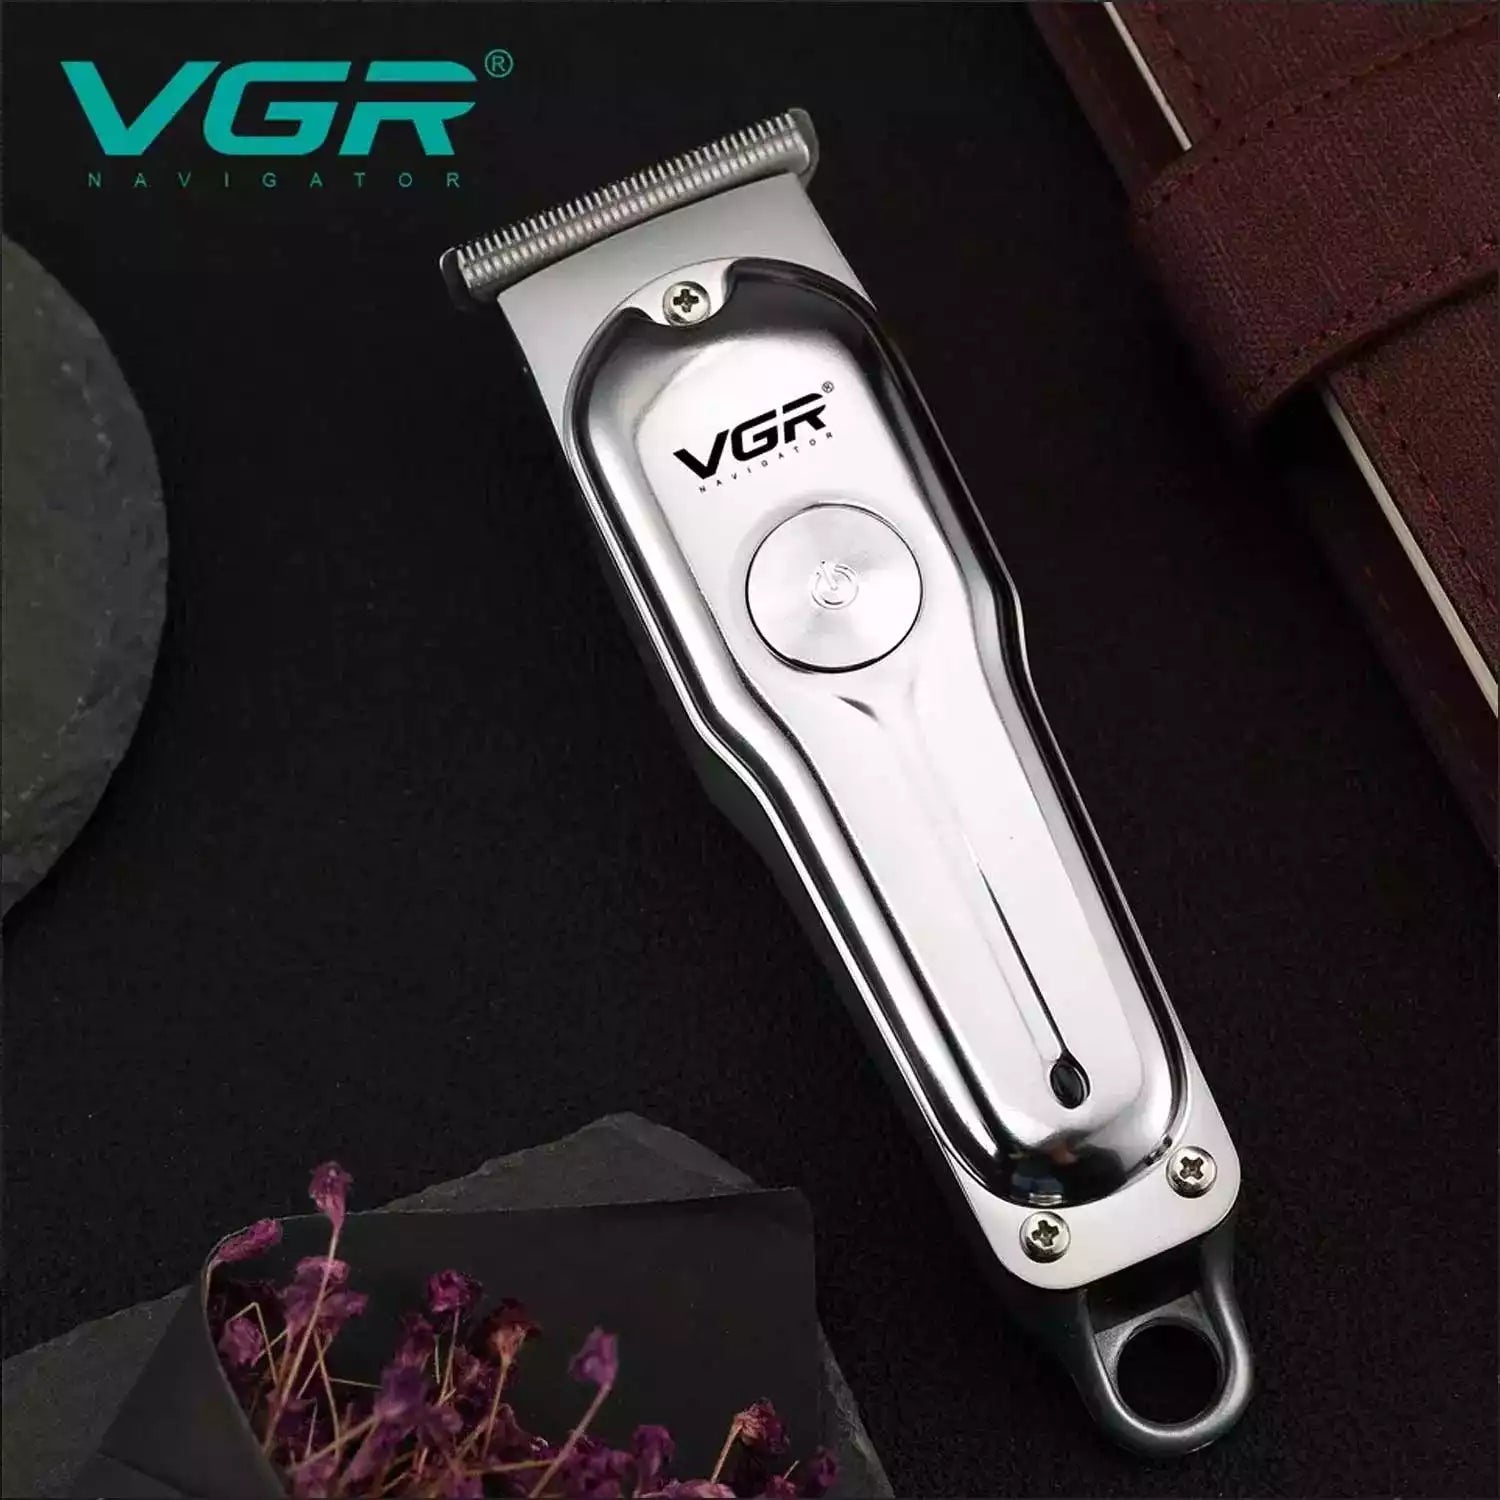 VGR, VGRindia, VGRofficial, V-071